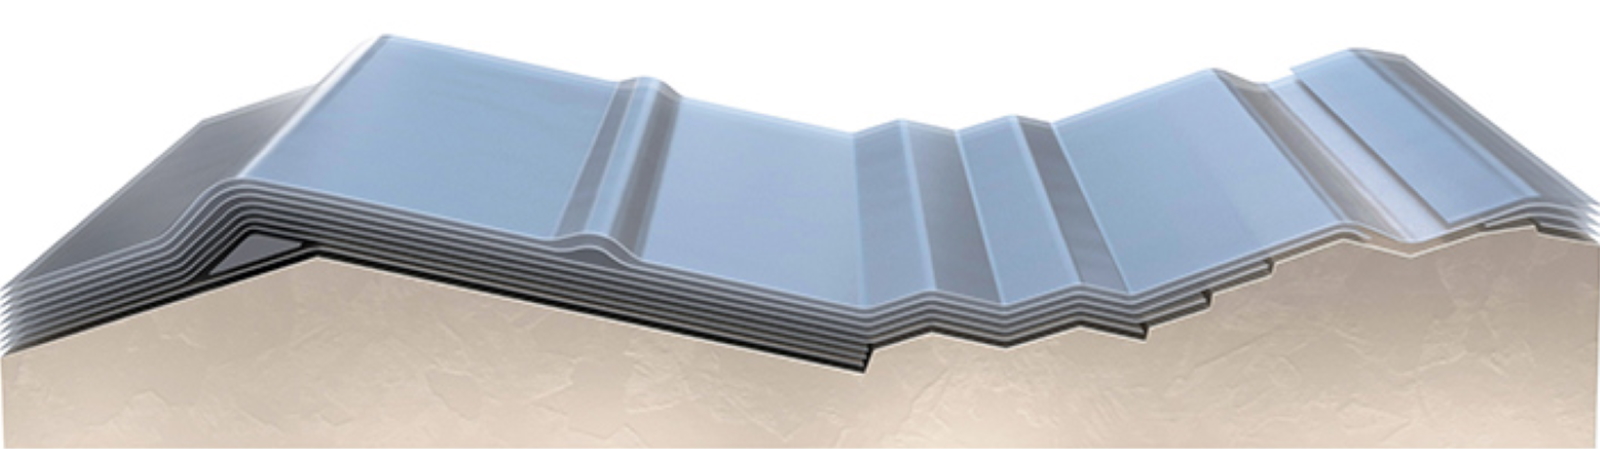 Voici la représentation du matériau en graphique mis au point par les chercheurs de l’Université Kaust. Les couches du matériau flexible sont composées de graphite et de nickel. © Kaust